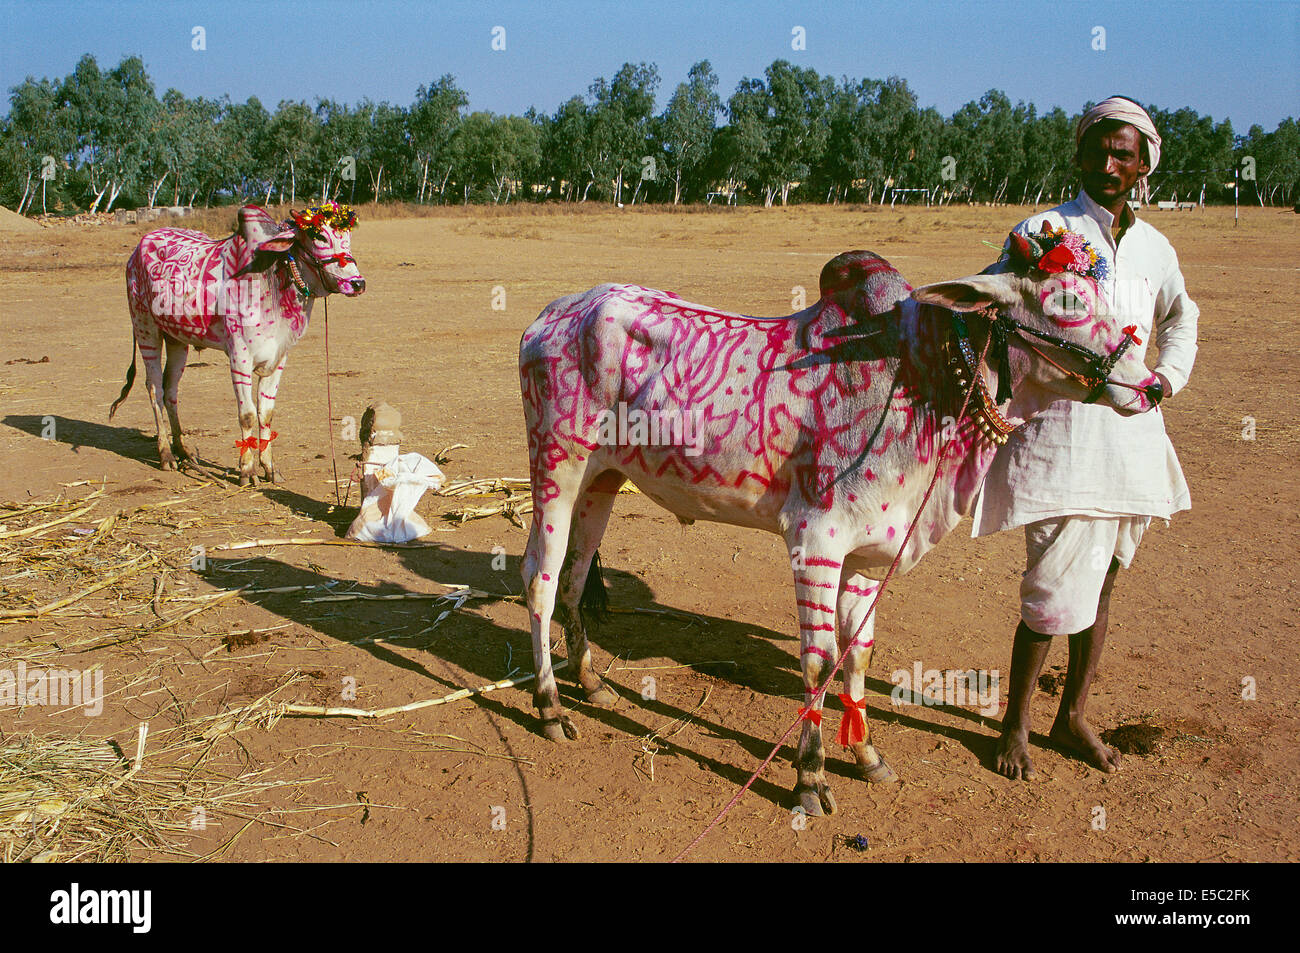 Homme avec deux taureaux. Ils ont été peint pour célébrer Diwali, une fête hindoue (Inde) Banque D'Images